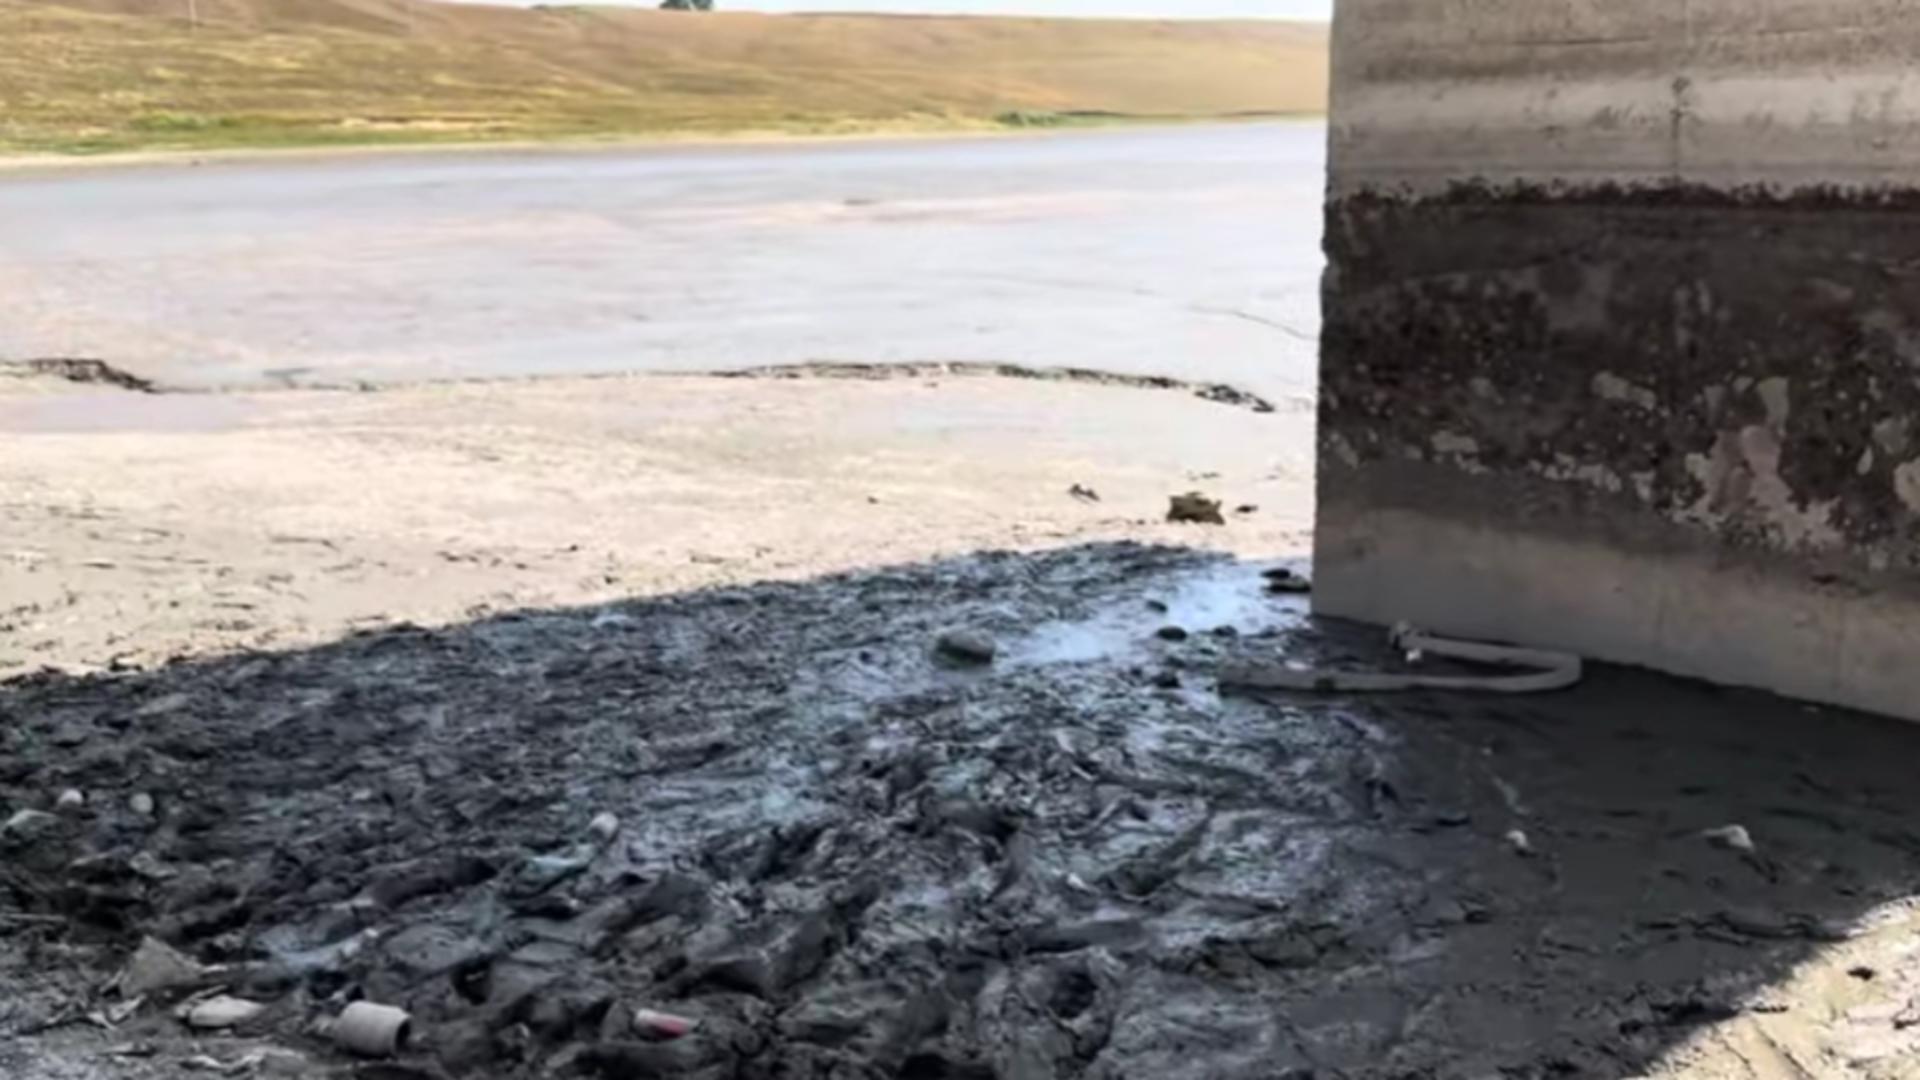 Dezastru ecologic în județul Suceava – Un iaz a secat  din cauza caniculei. Localnicii sunt exasperați din cauza mirosului de pește putrezit